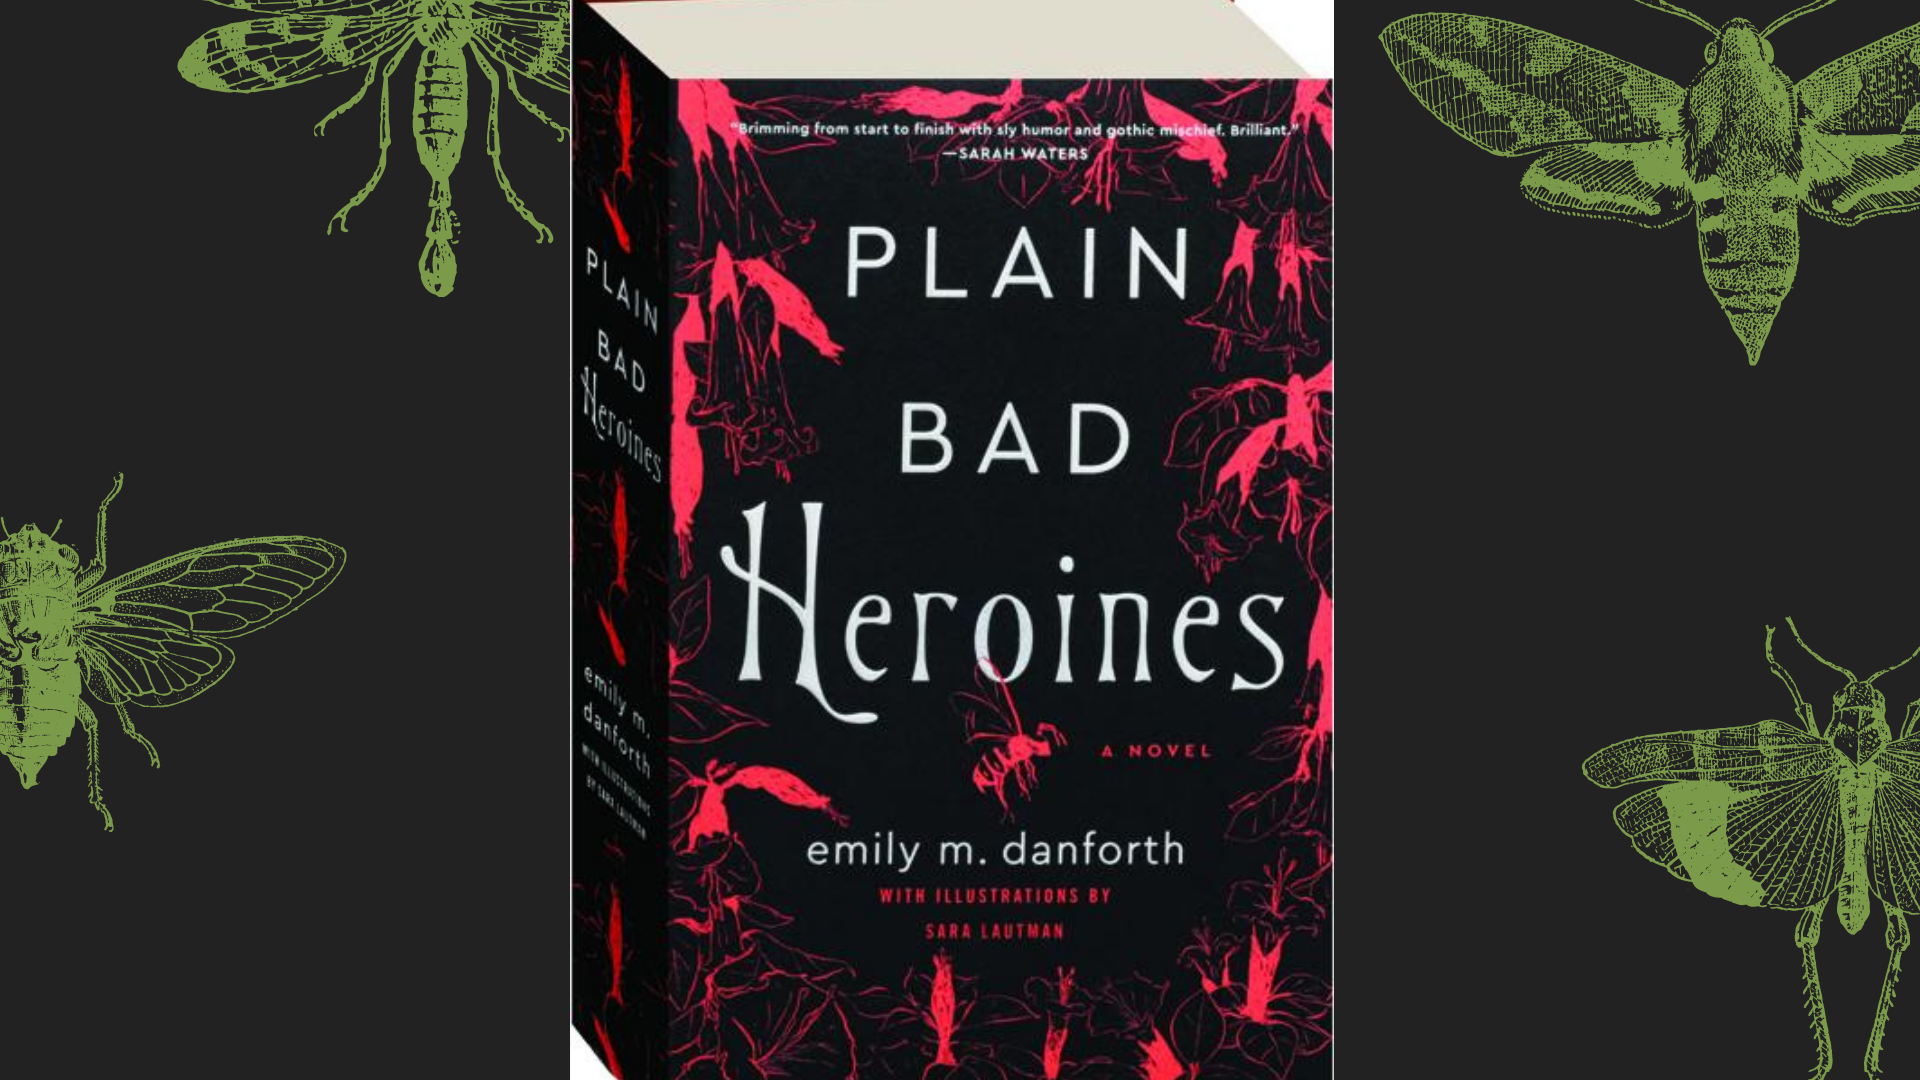 plain bad heroines goodreads